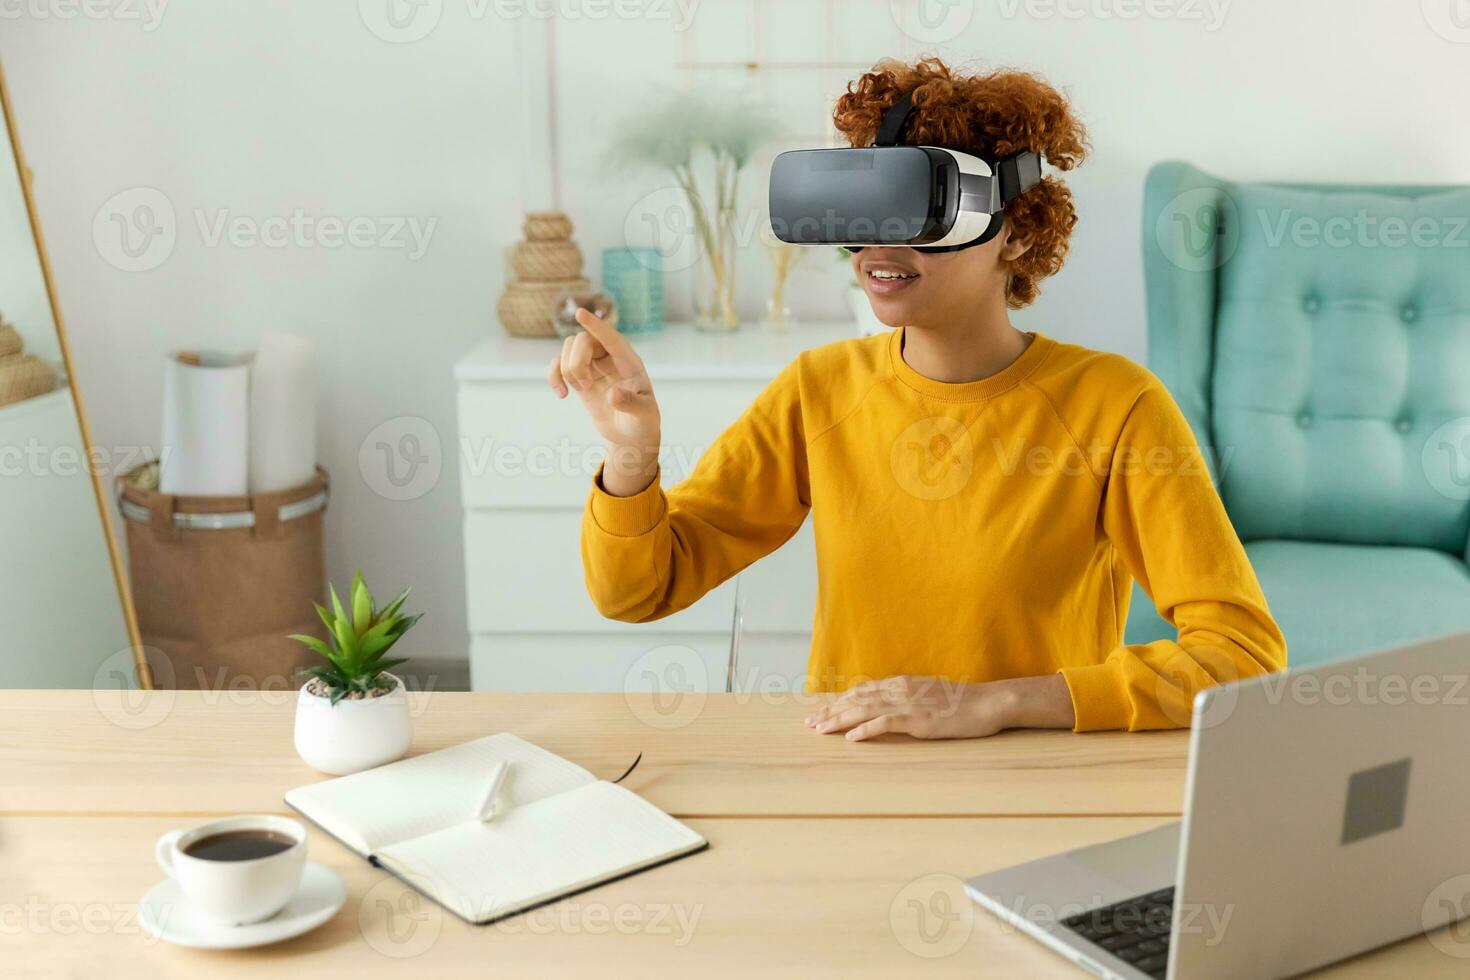 africano americano joven mujer vistiendo utilizando virtual realidad metaverso vr lentes auriculares a hogar. niña conmovedor aire durante vr experiencia en virtual realidad casco. simulación de alta tecnología videojuego concepto. foto